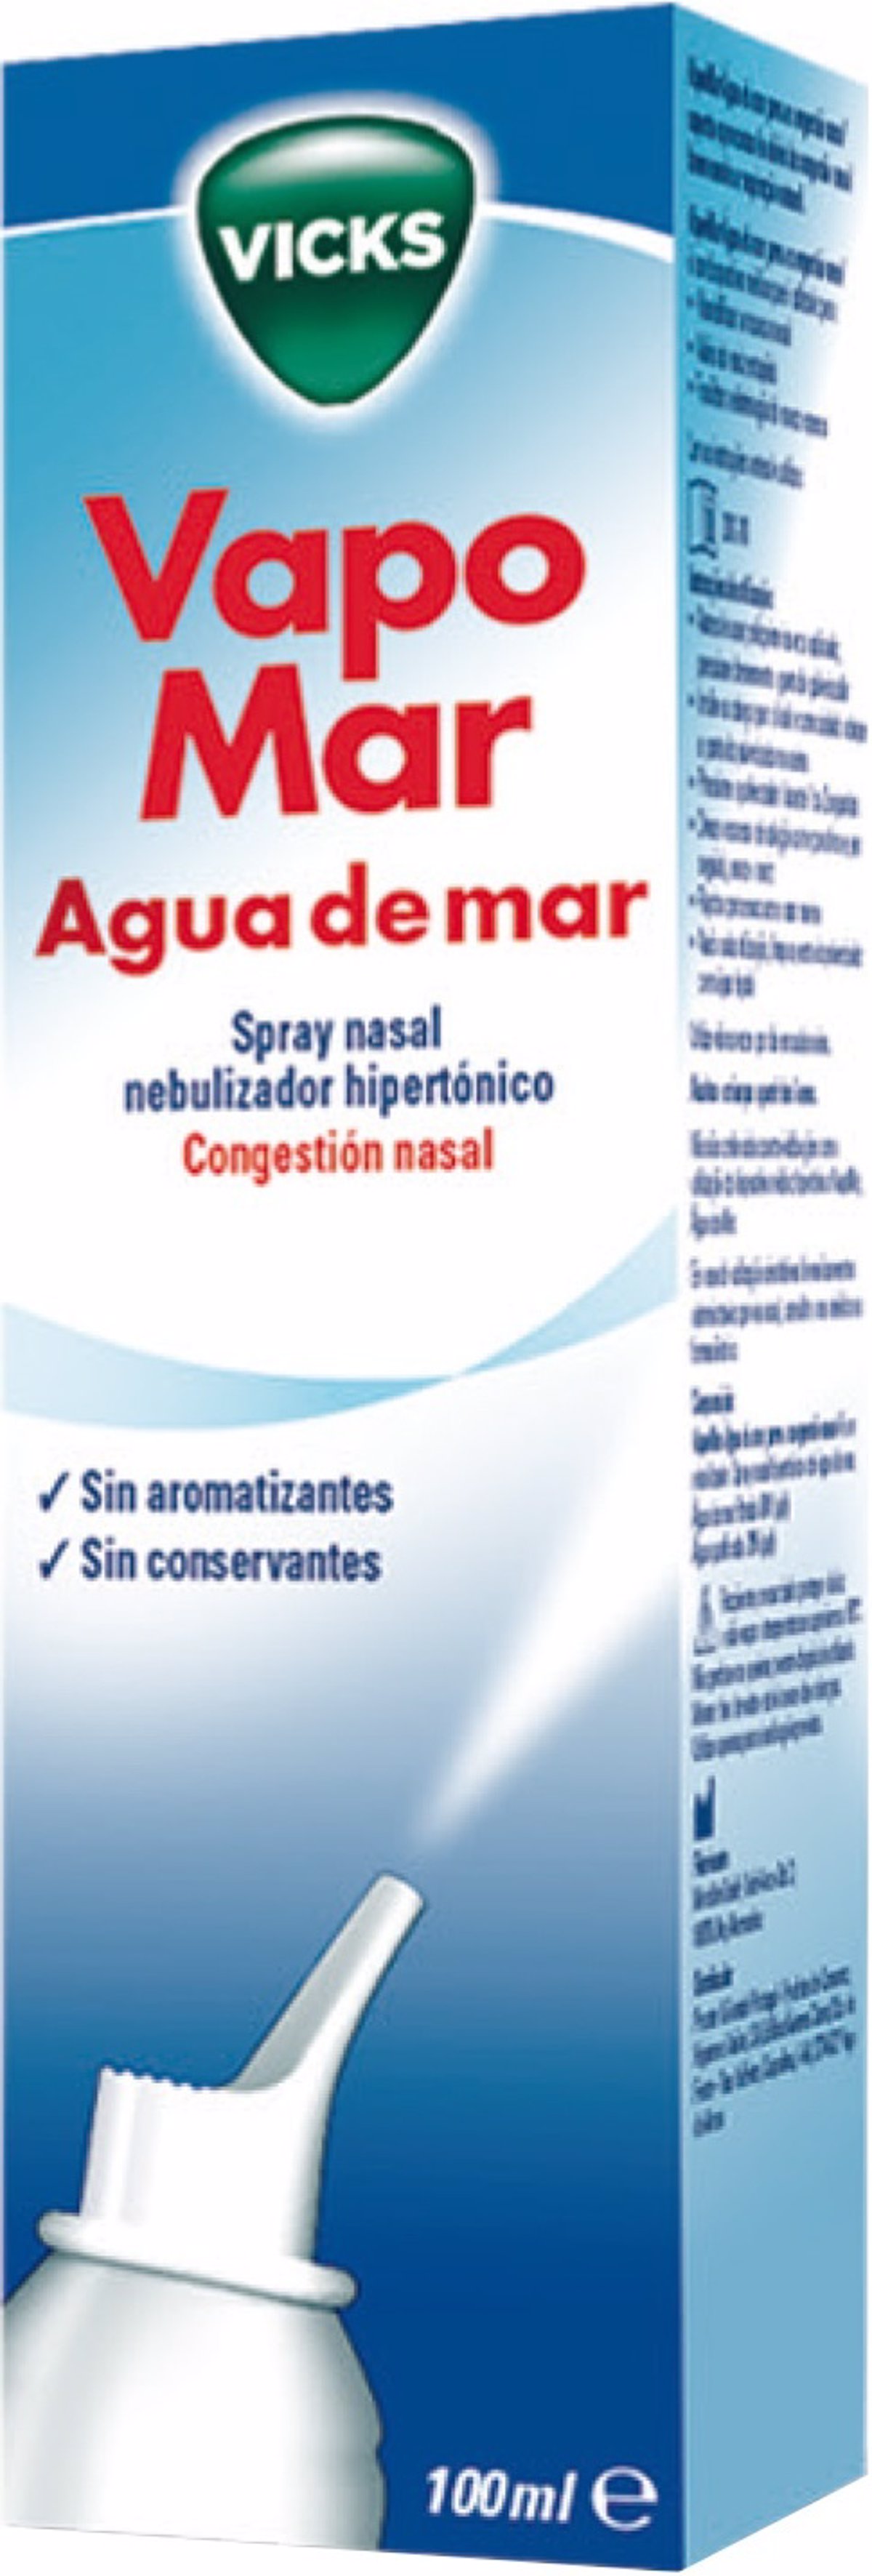 Beneficios del agua de mar para la nariz